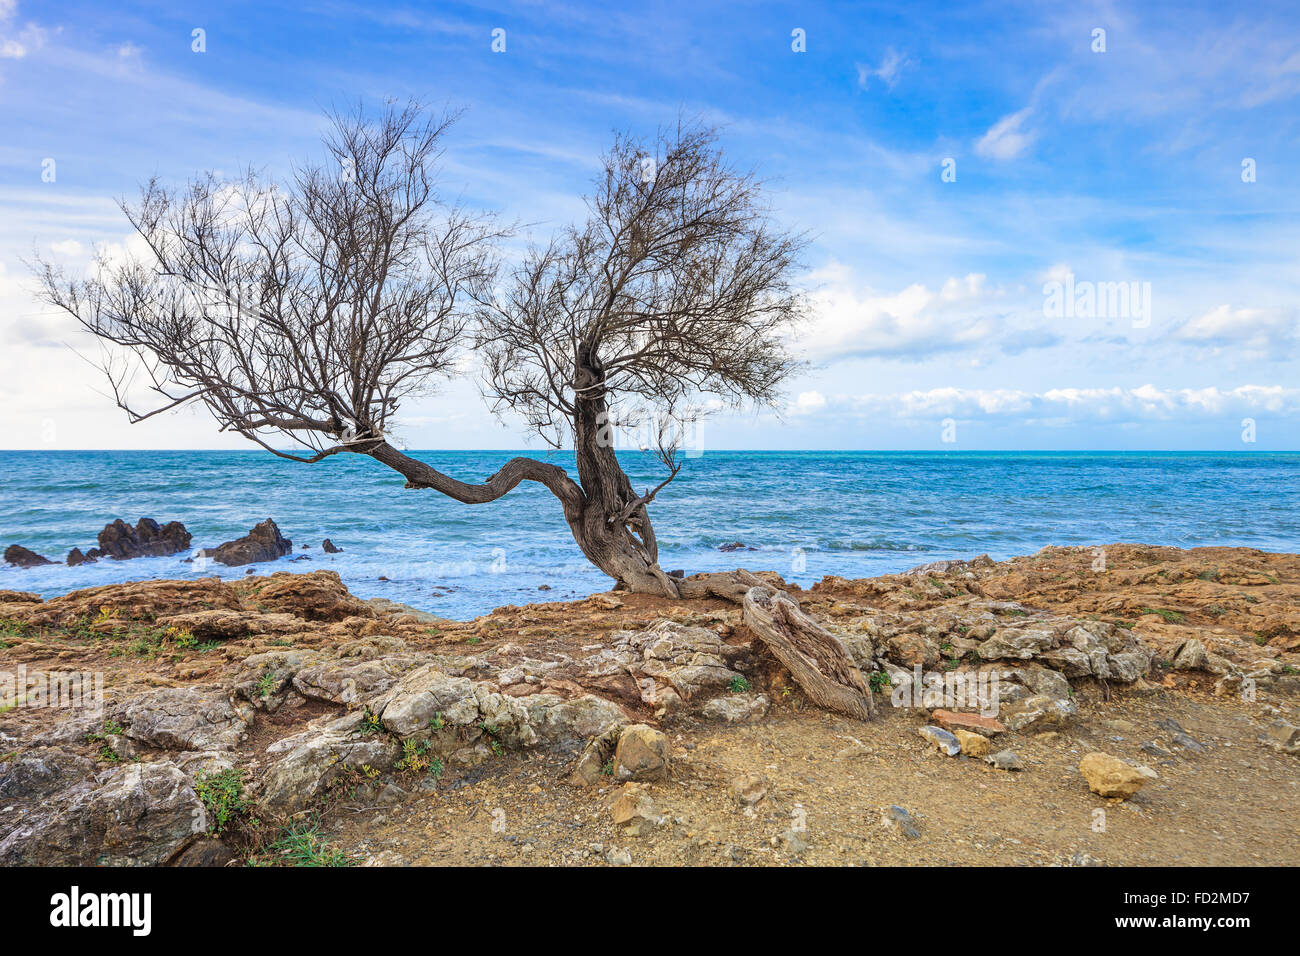 Tamarisken oder Salz Zeder oder Tamarix geschwungene Baum auf Felsen Strand und blauen Meer im Hintergrund. Stockfoto